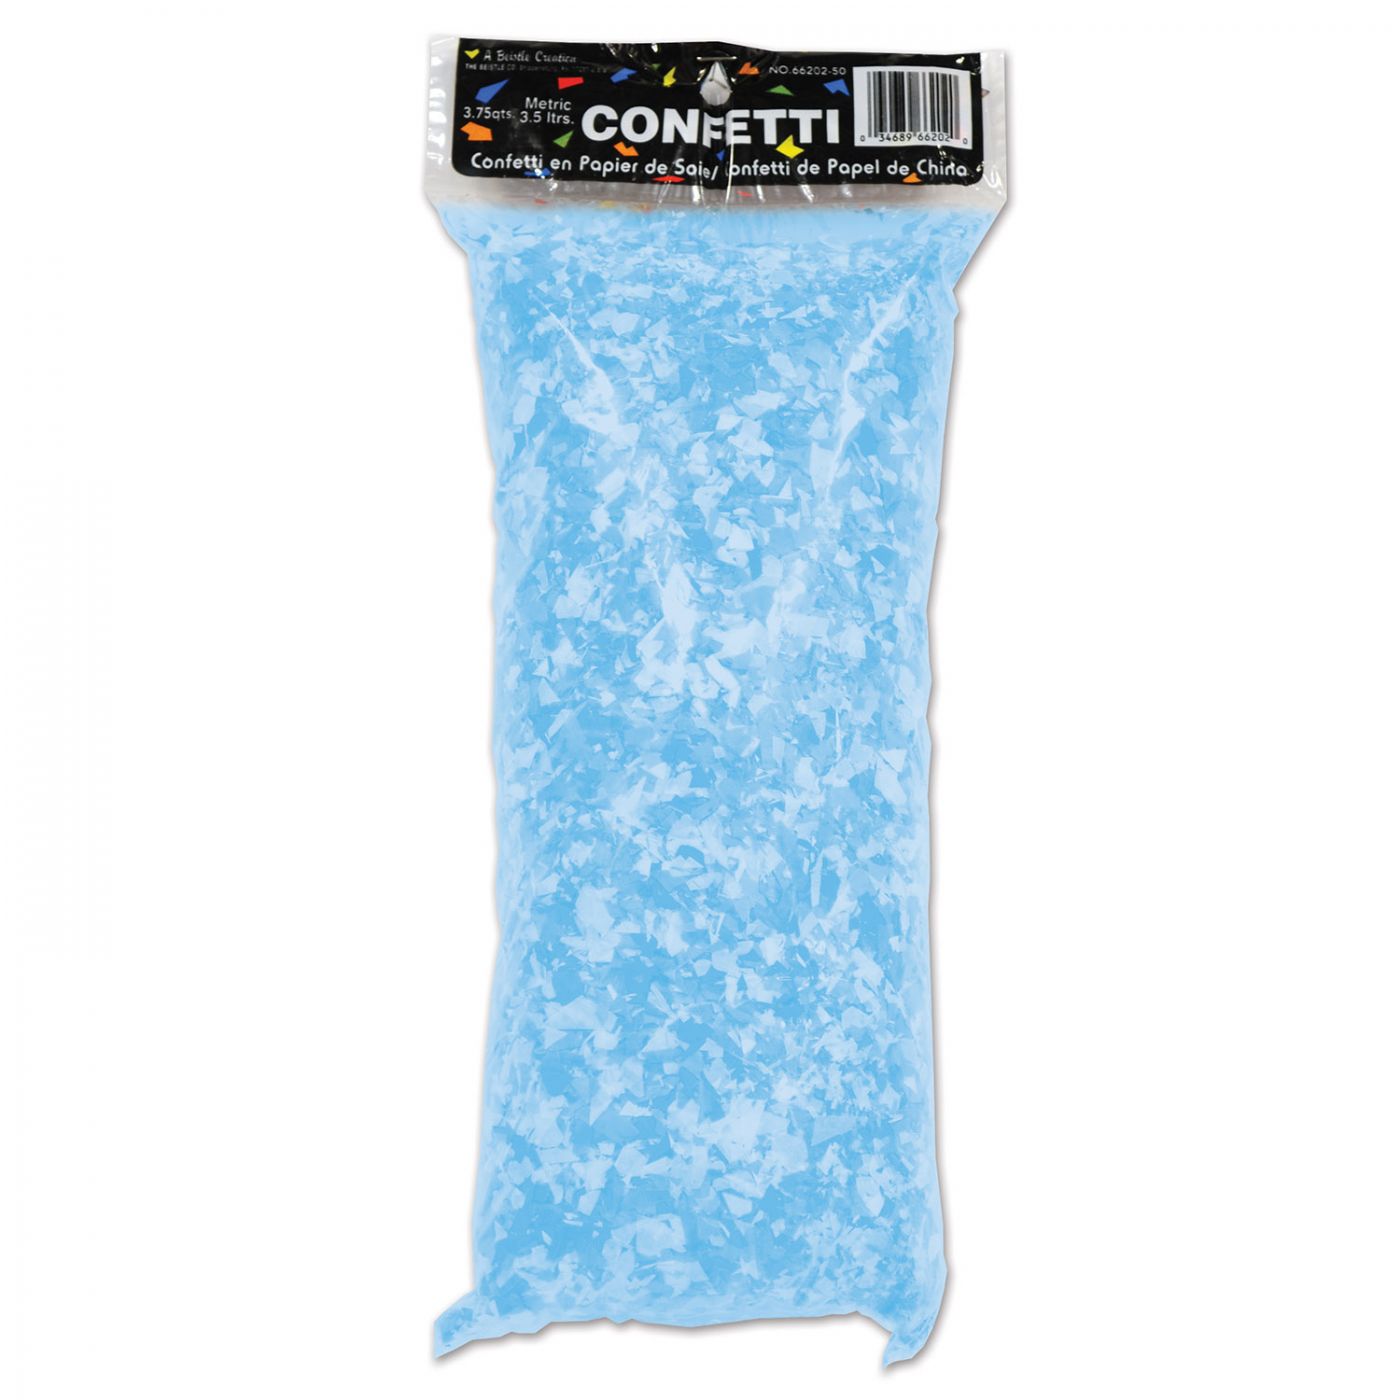 Tissue Confetti (6) image